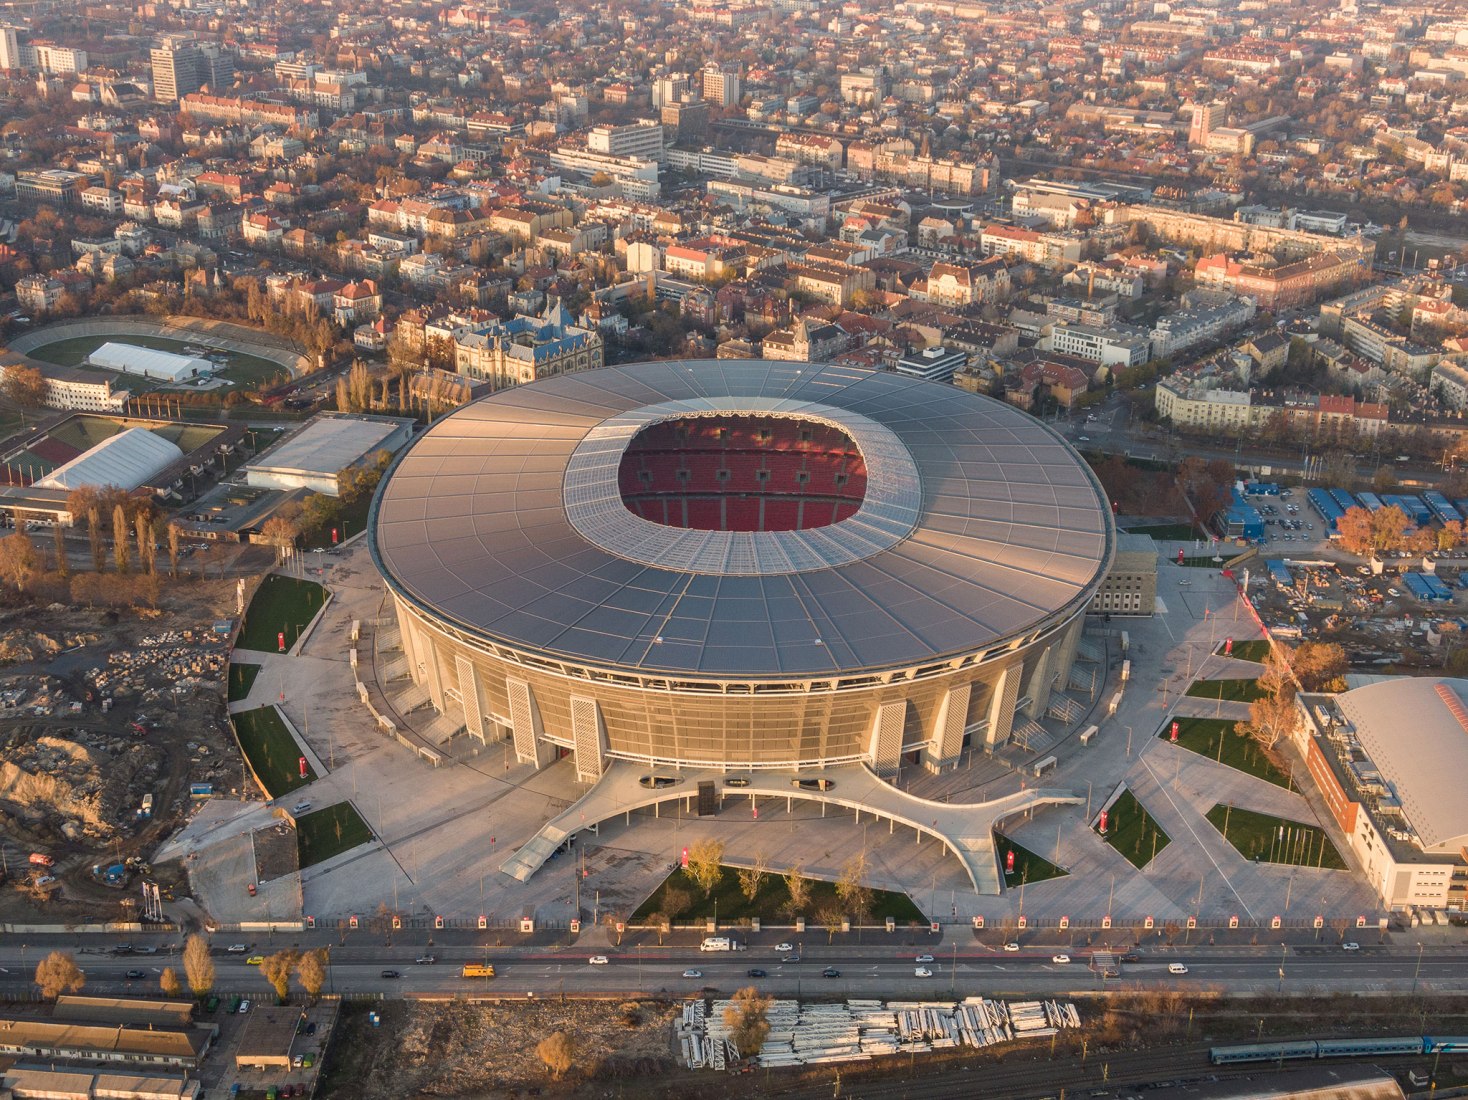 Puskás Aréna Stadium by Közti. Photograph by Gyorgy Palko